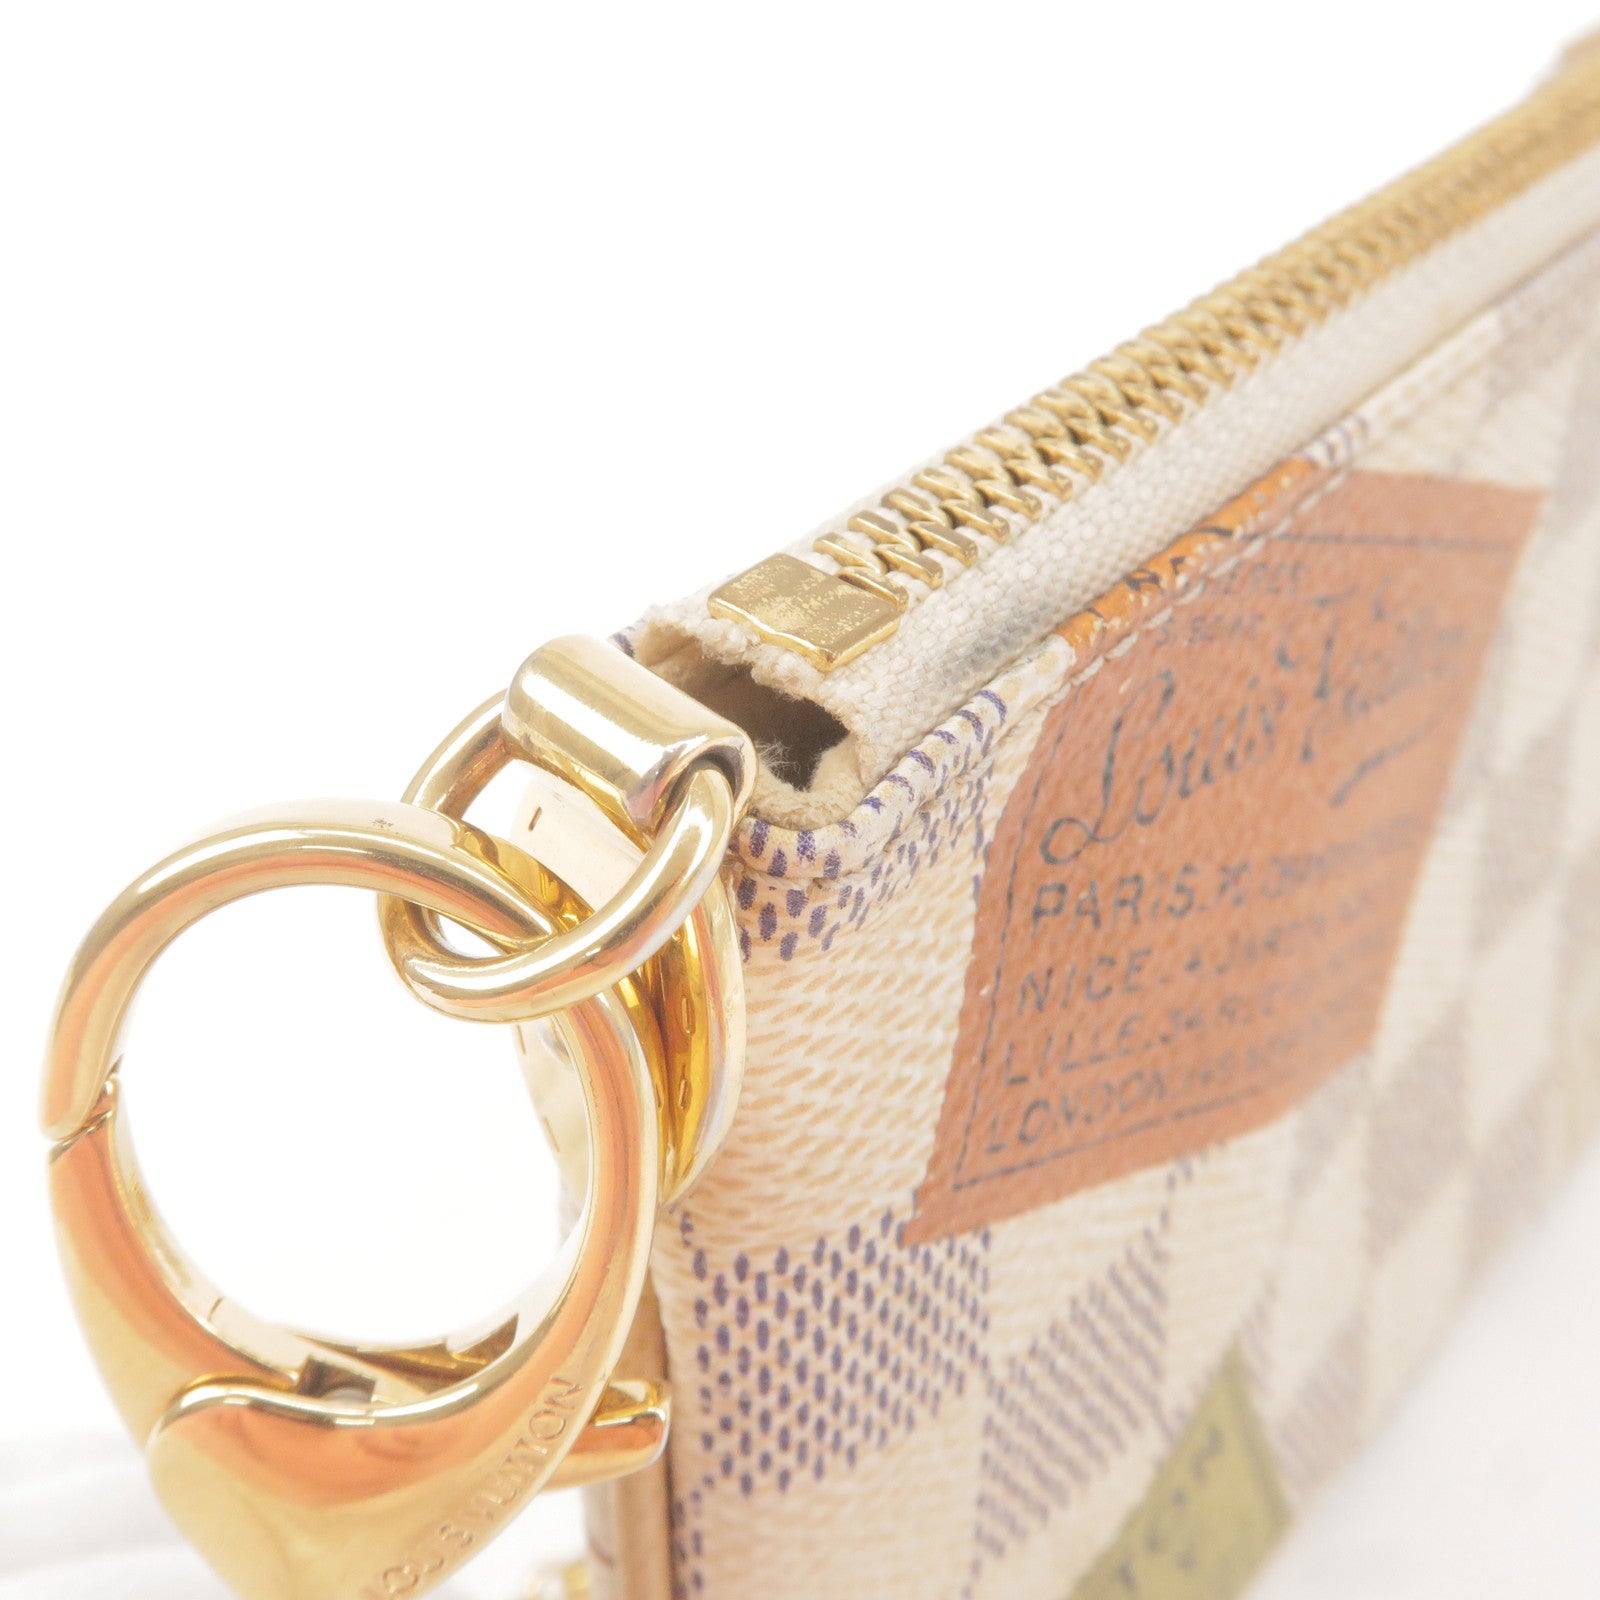 Bag - Hand - Vuitton - Pochette - Milla - MM - ep_vintage luxury